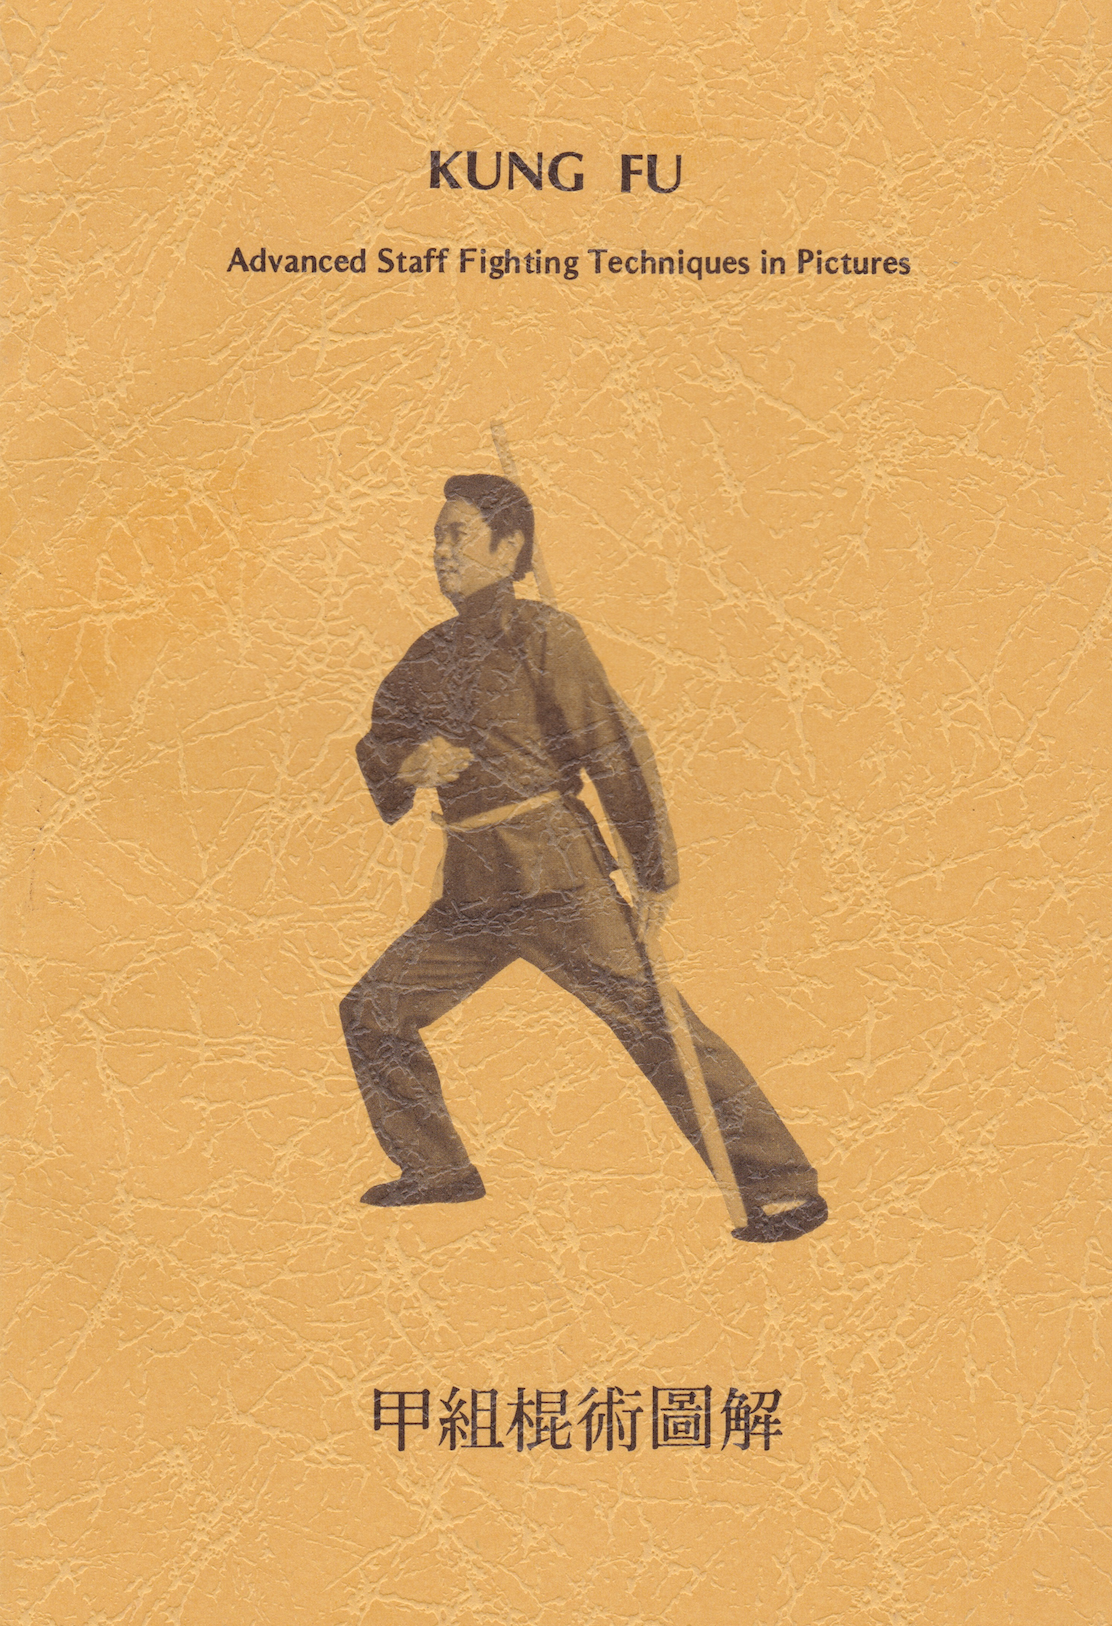 Libro de técnicas avanzadas de lucha con personal de Kung Fu en imágenes de Thomas Marks